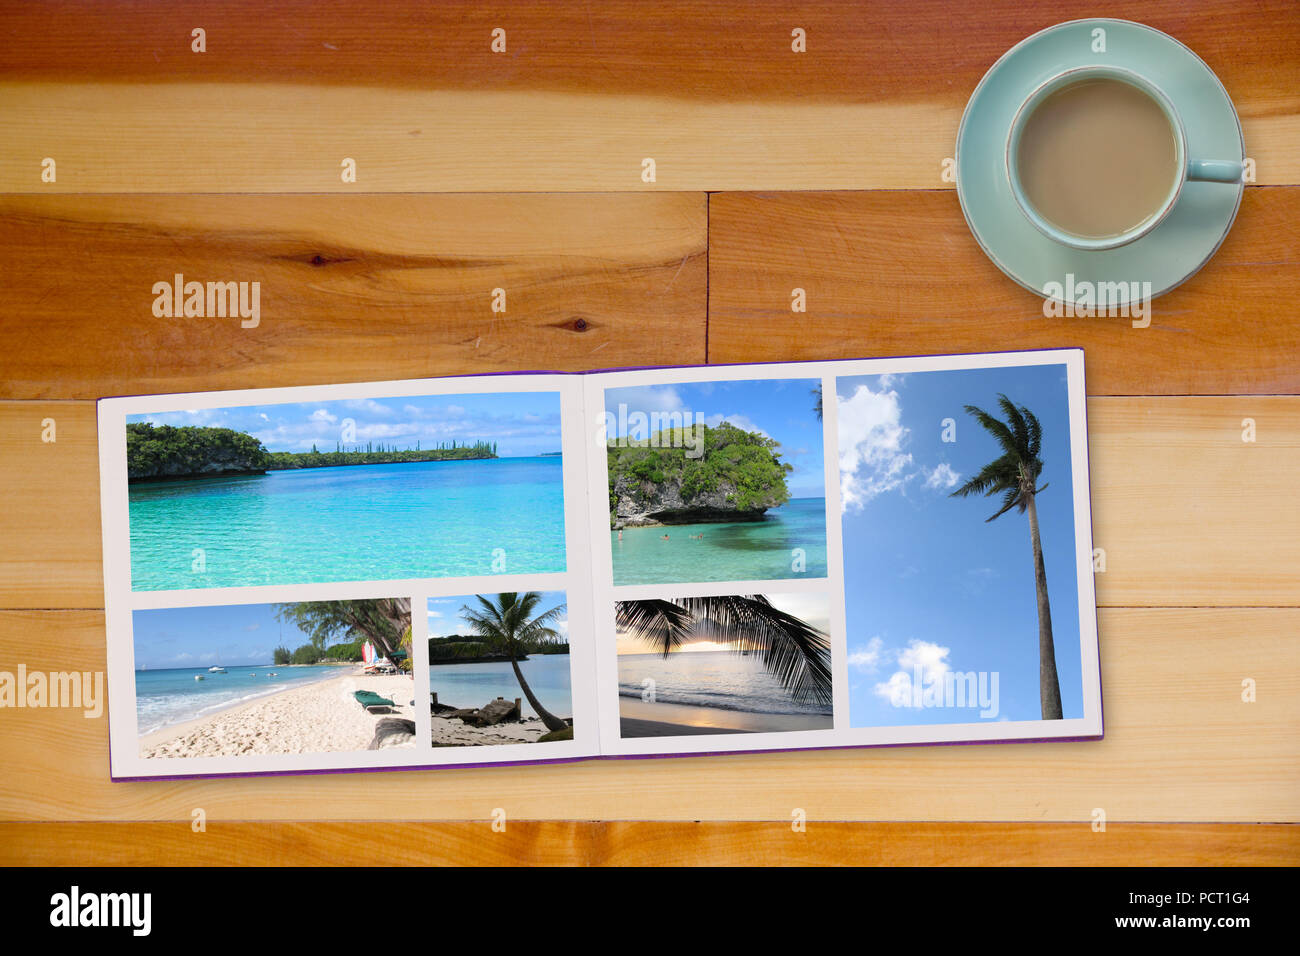 Fotobuch Album auf Holzboden Tabelle mit Reisen Fotos von Stränden und Kaffee oder Tee in Tasse Stockfoto